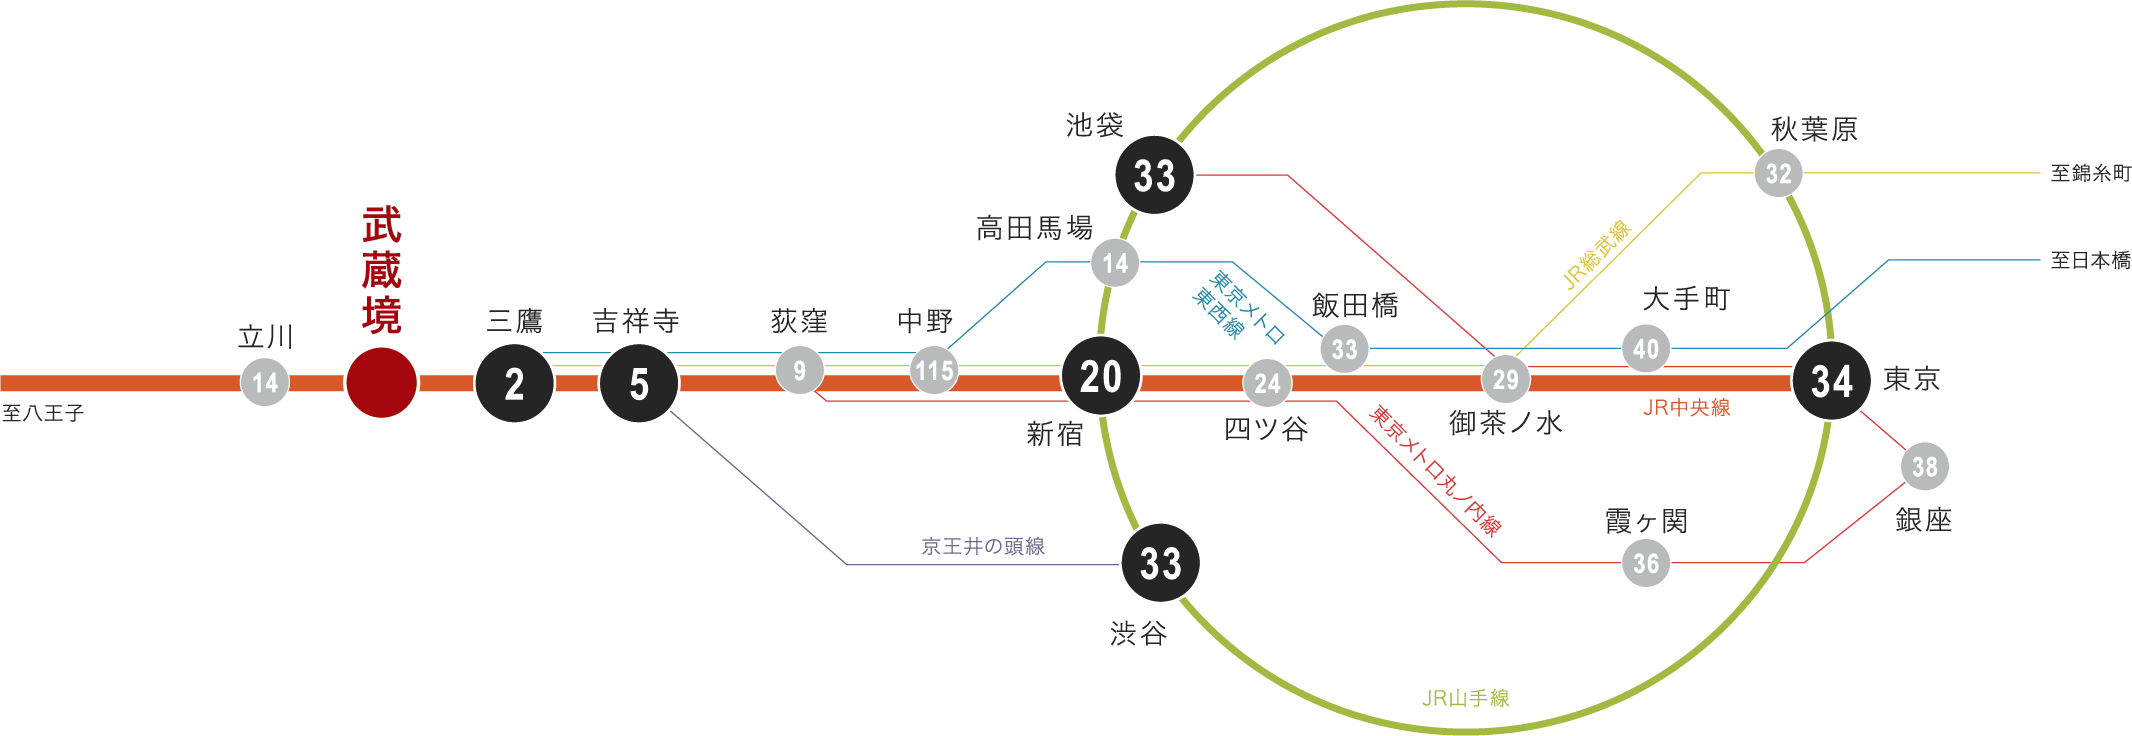 武蔵境駅周辺路線図